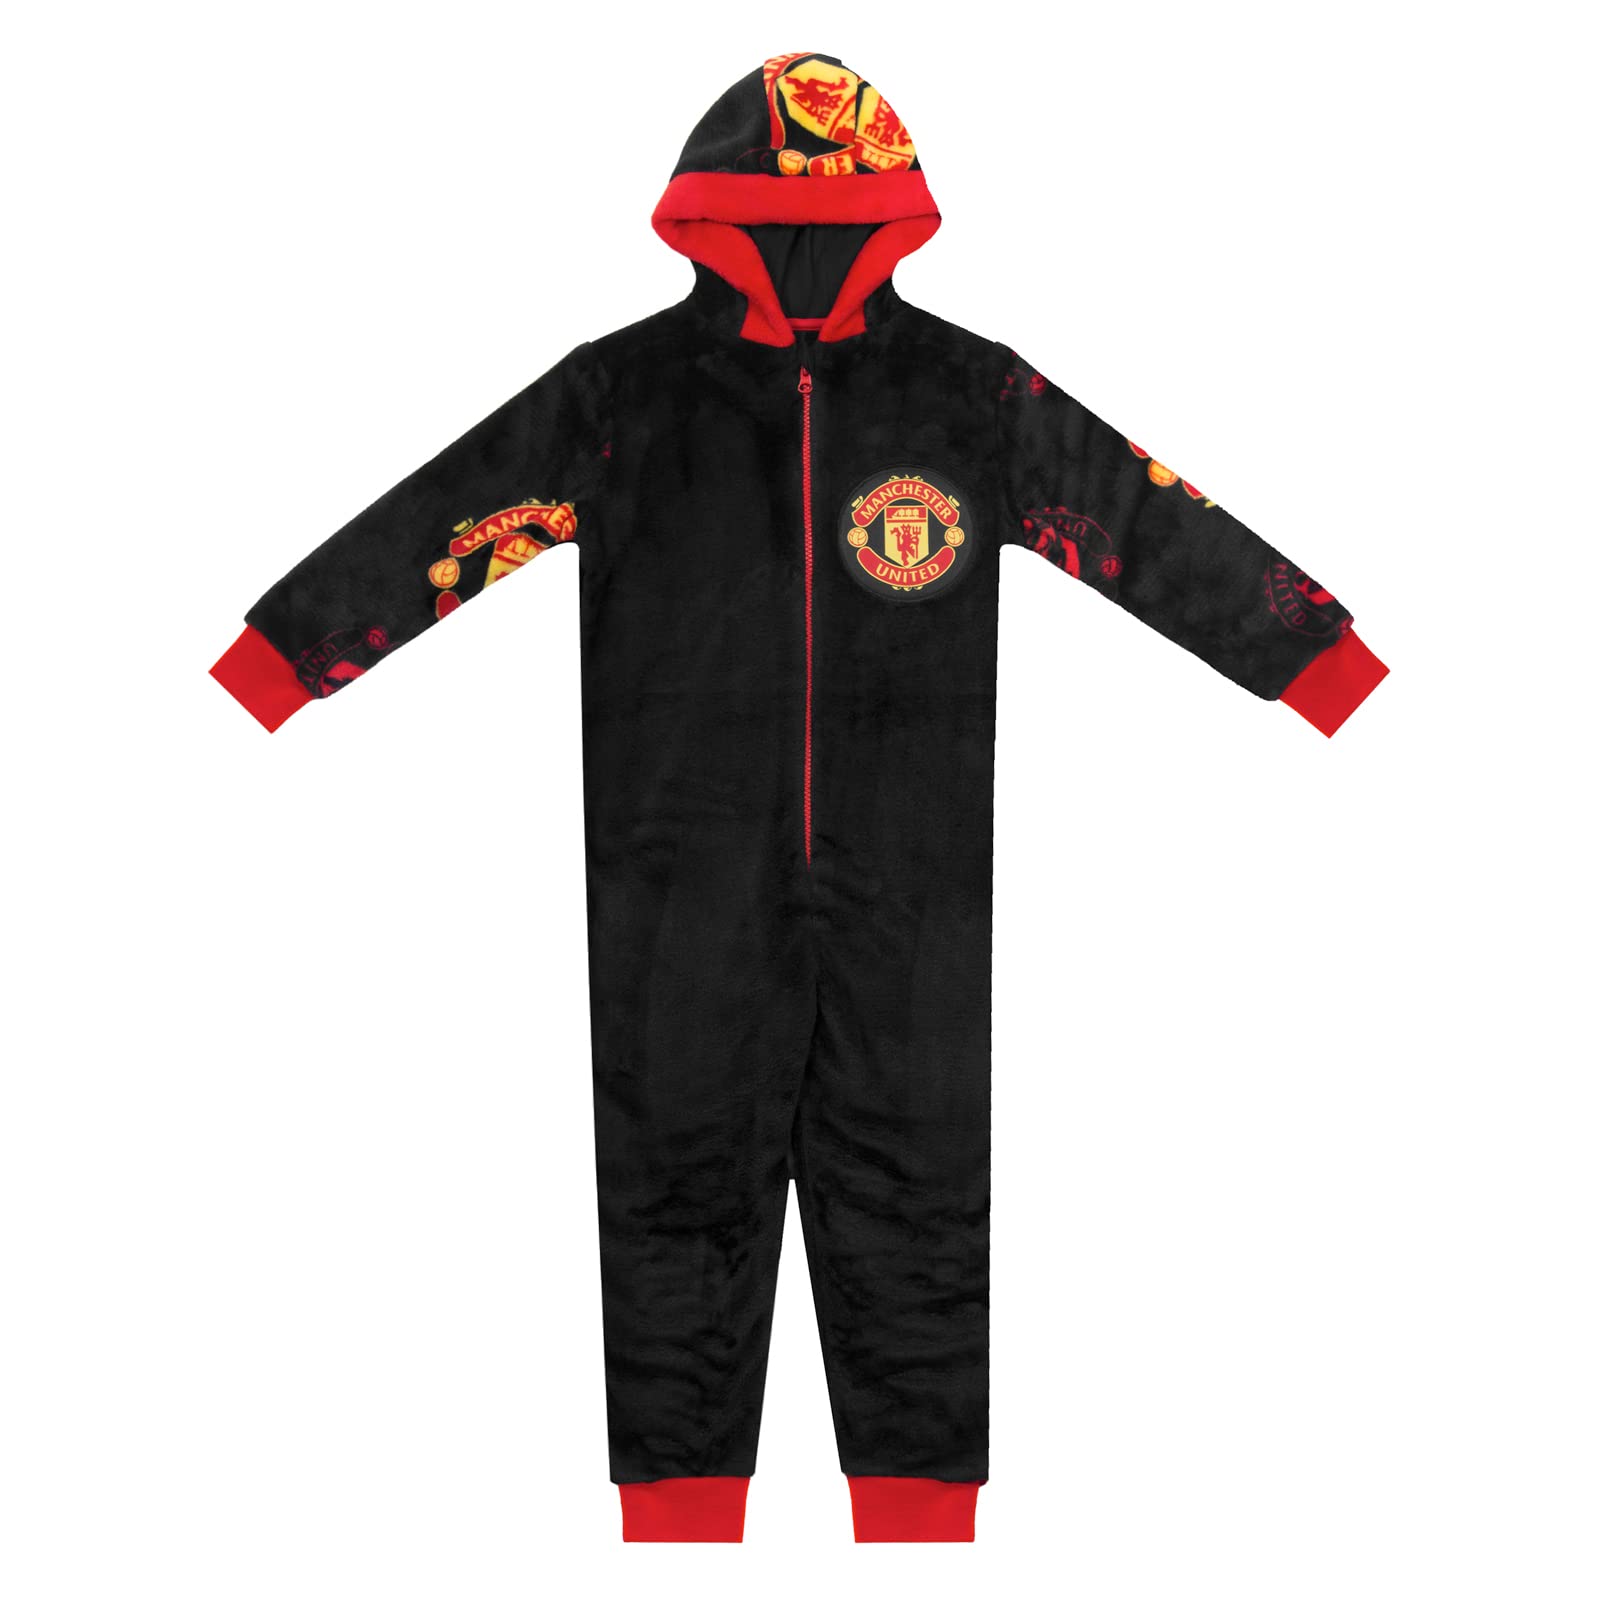 Manchester United FC - Jungen Schlafanzug-Einteiler aus Fleece - Offizielles Merchandise - Geschenk für Fußballfans - 6-7 Jahre